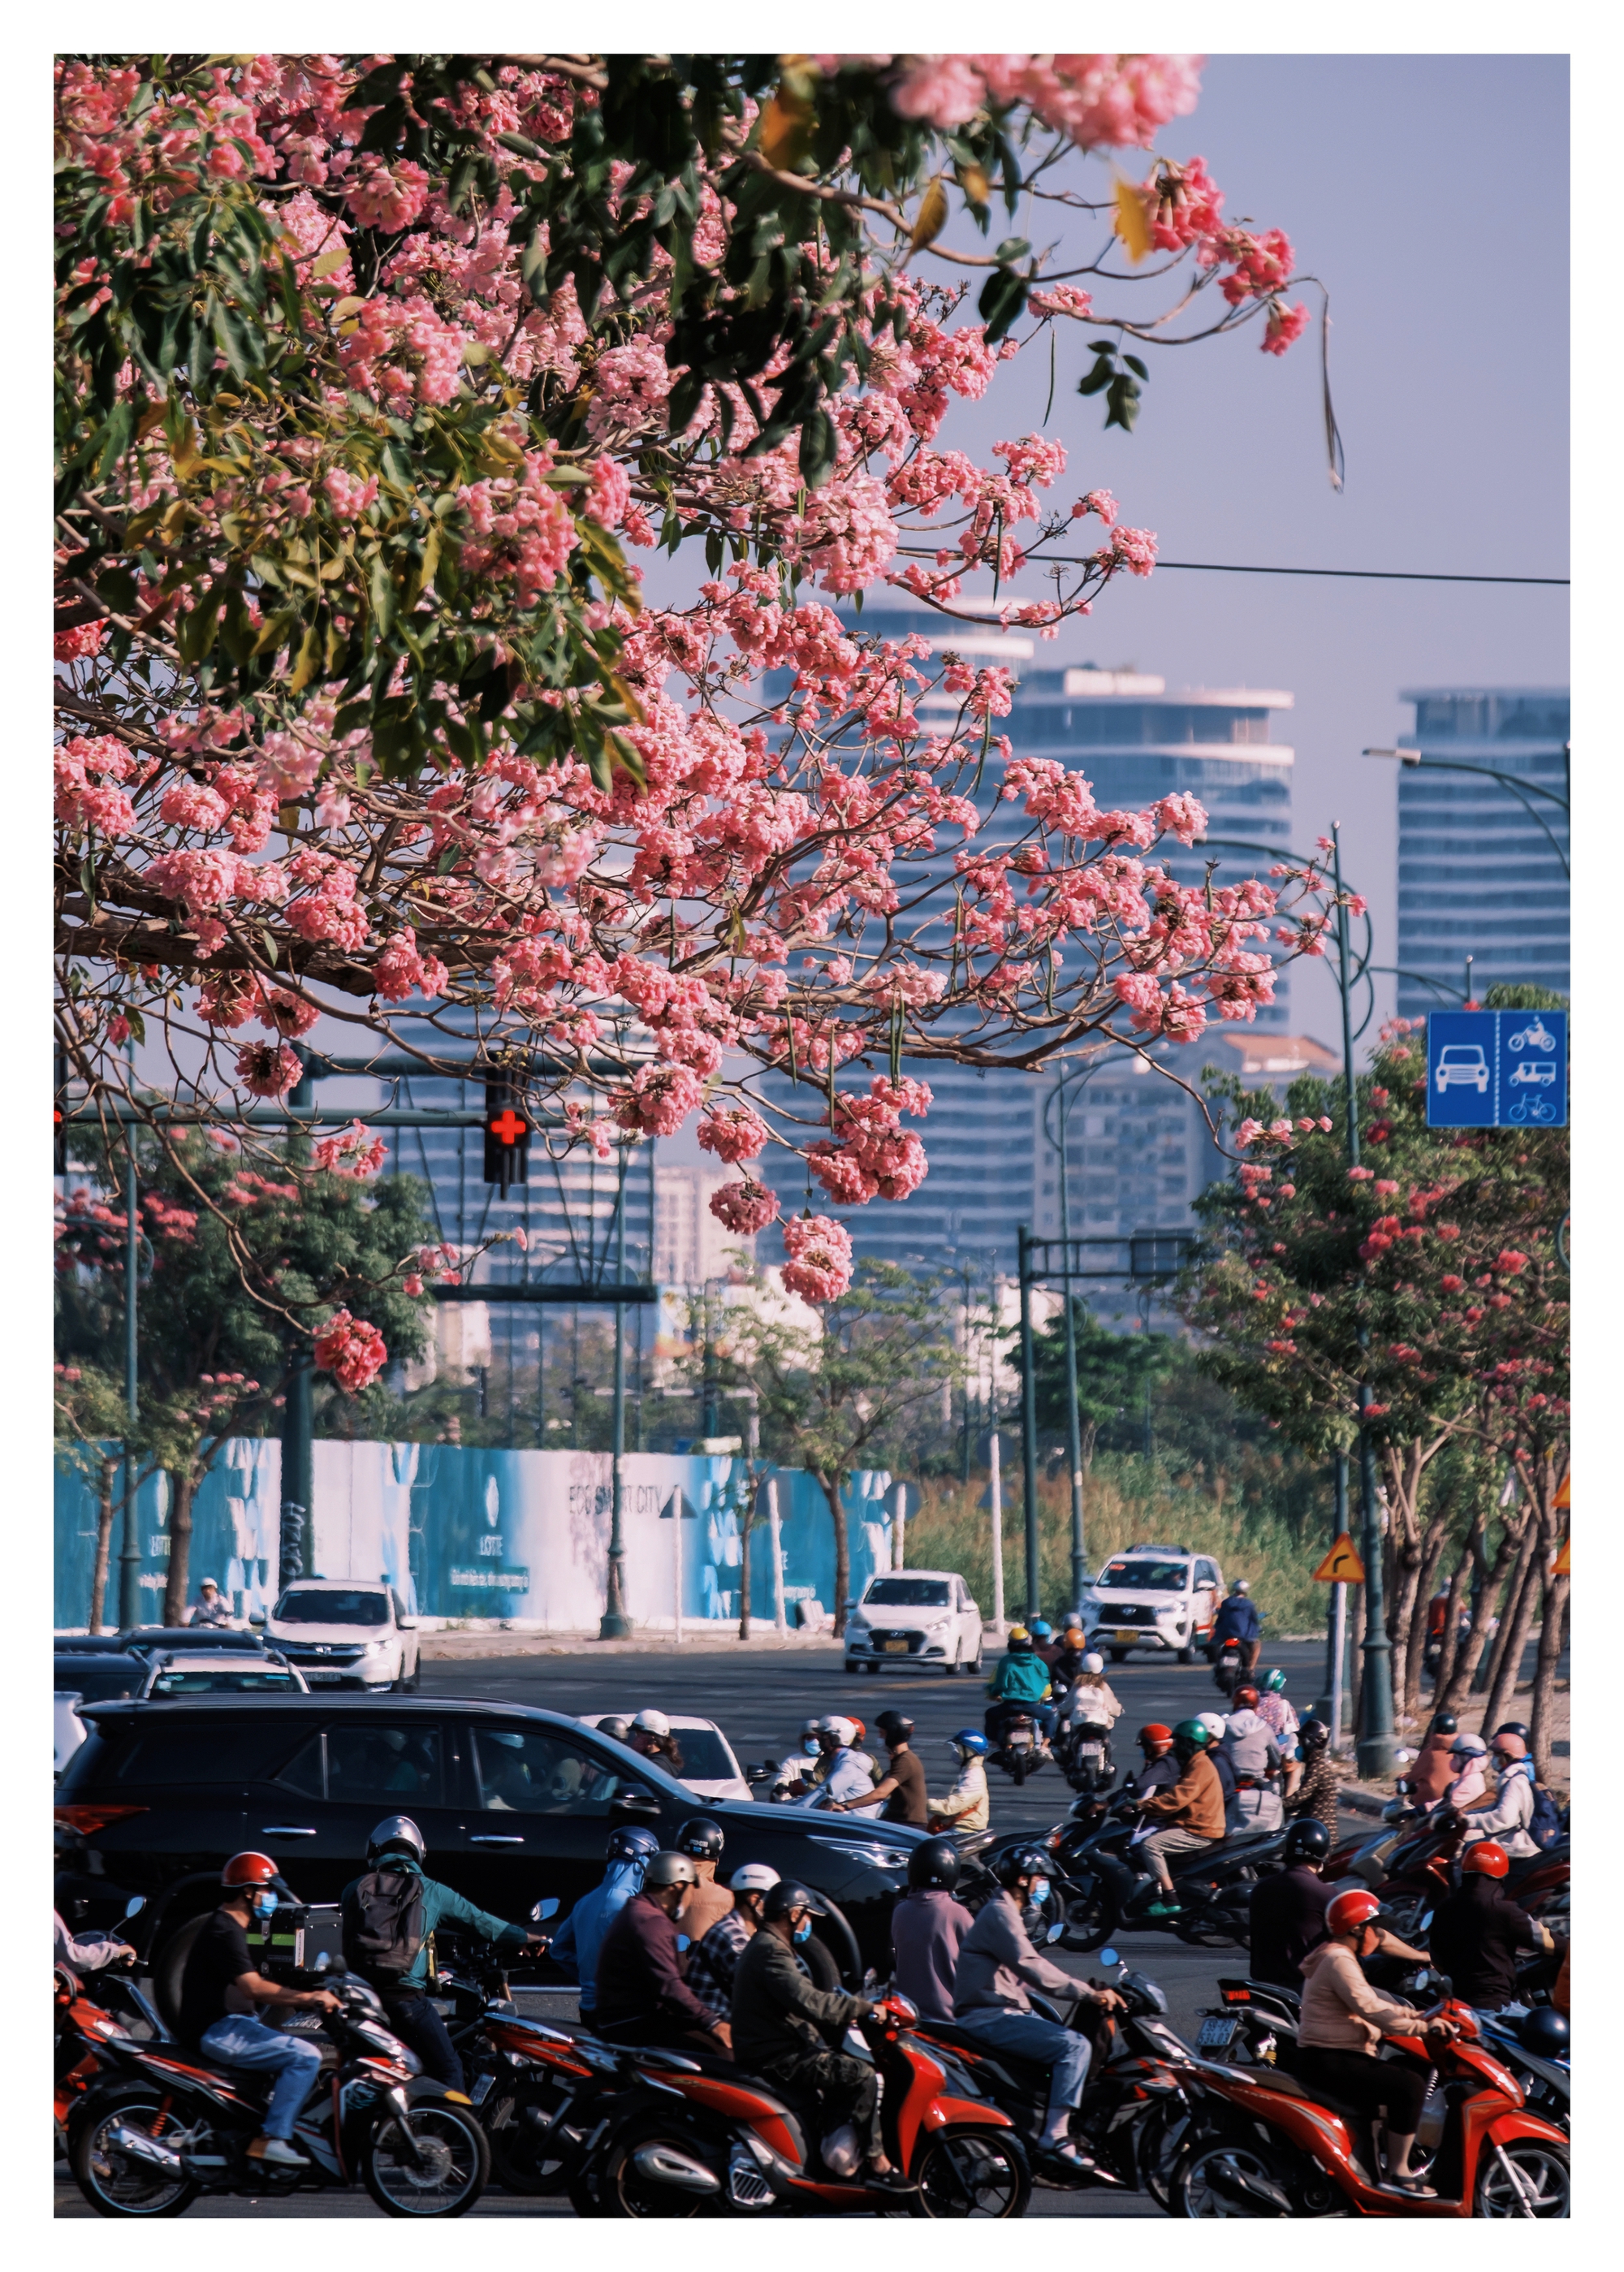 Mùa kèn hồng rợp trời Sài Gòn, chợt thấy thành phố mộng mơ biết bao giữa sắc hoa rực rỡ- Ảnh 14.